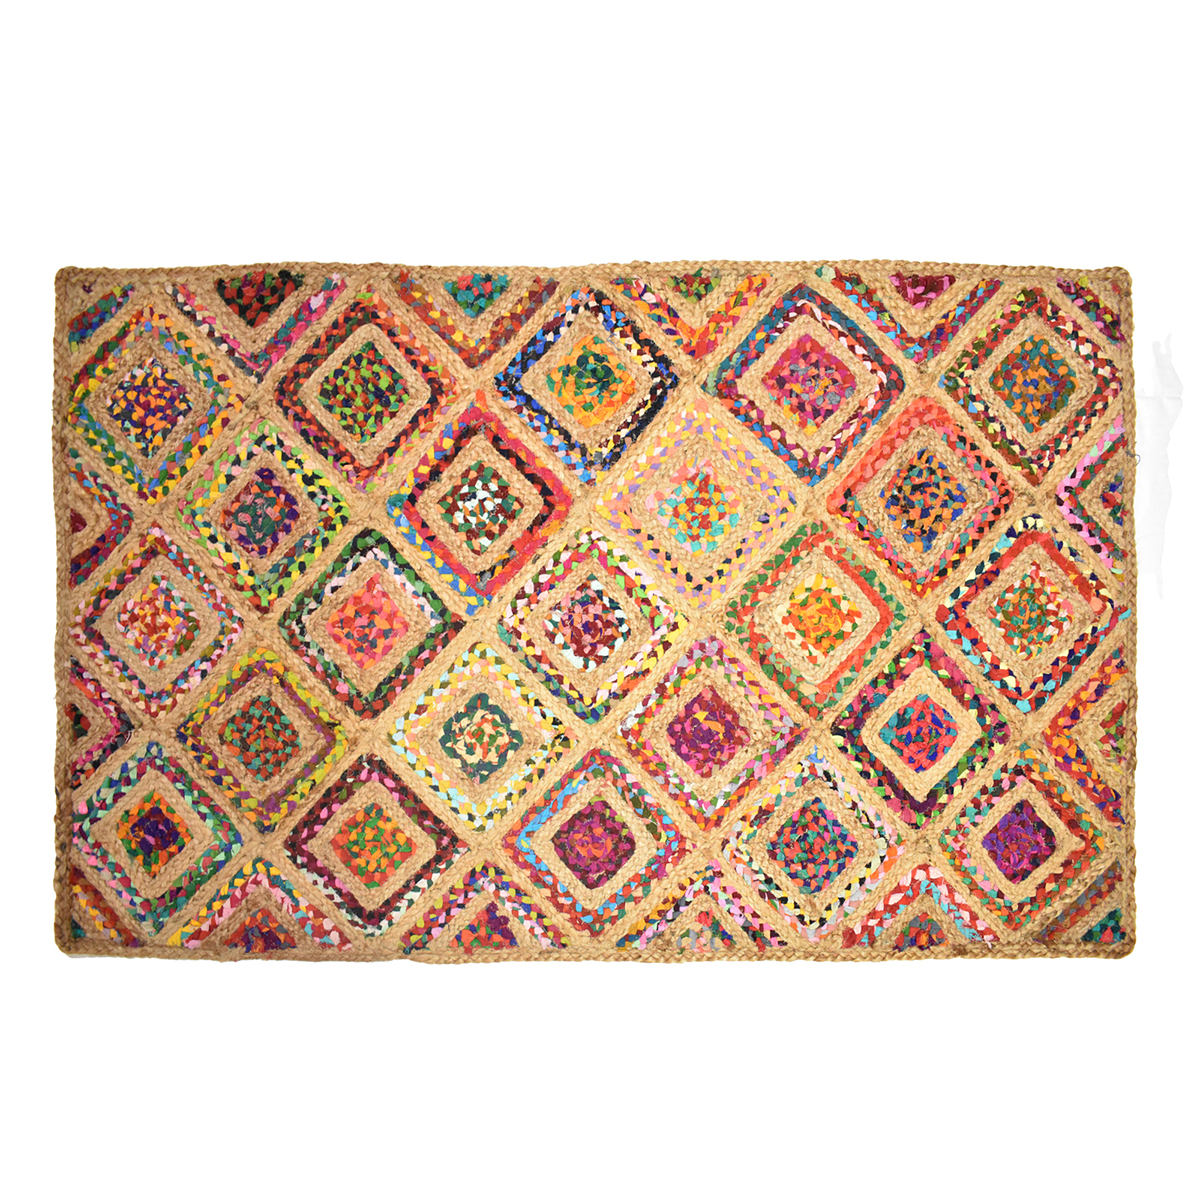 35541-alfombra-yute-rombos-90-x-150.jpg